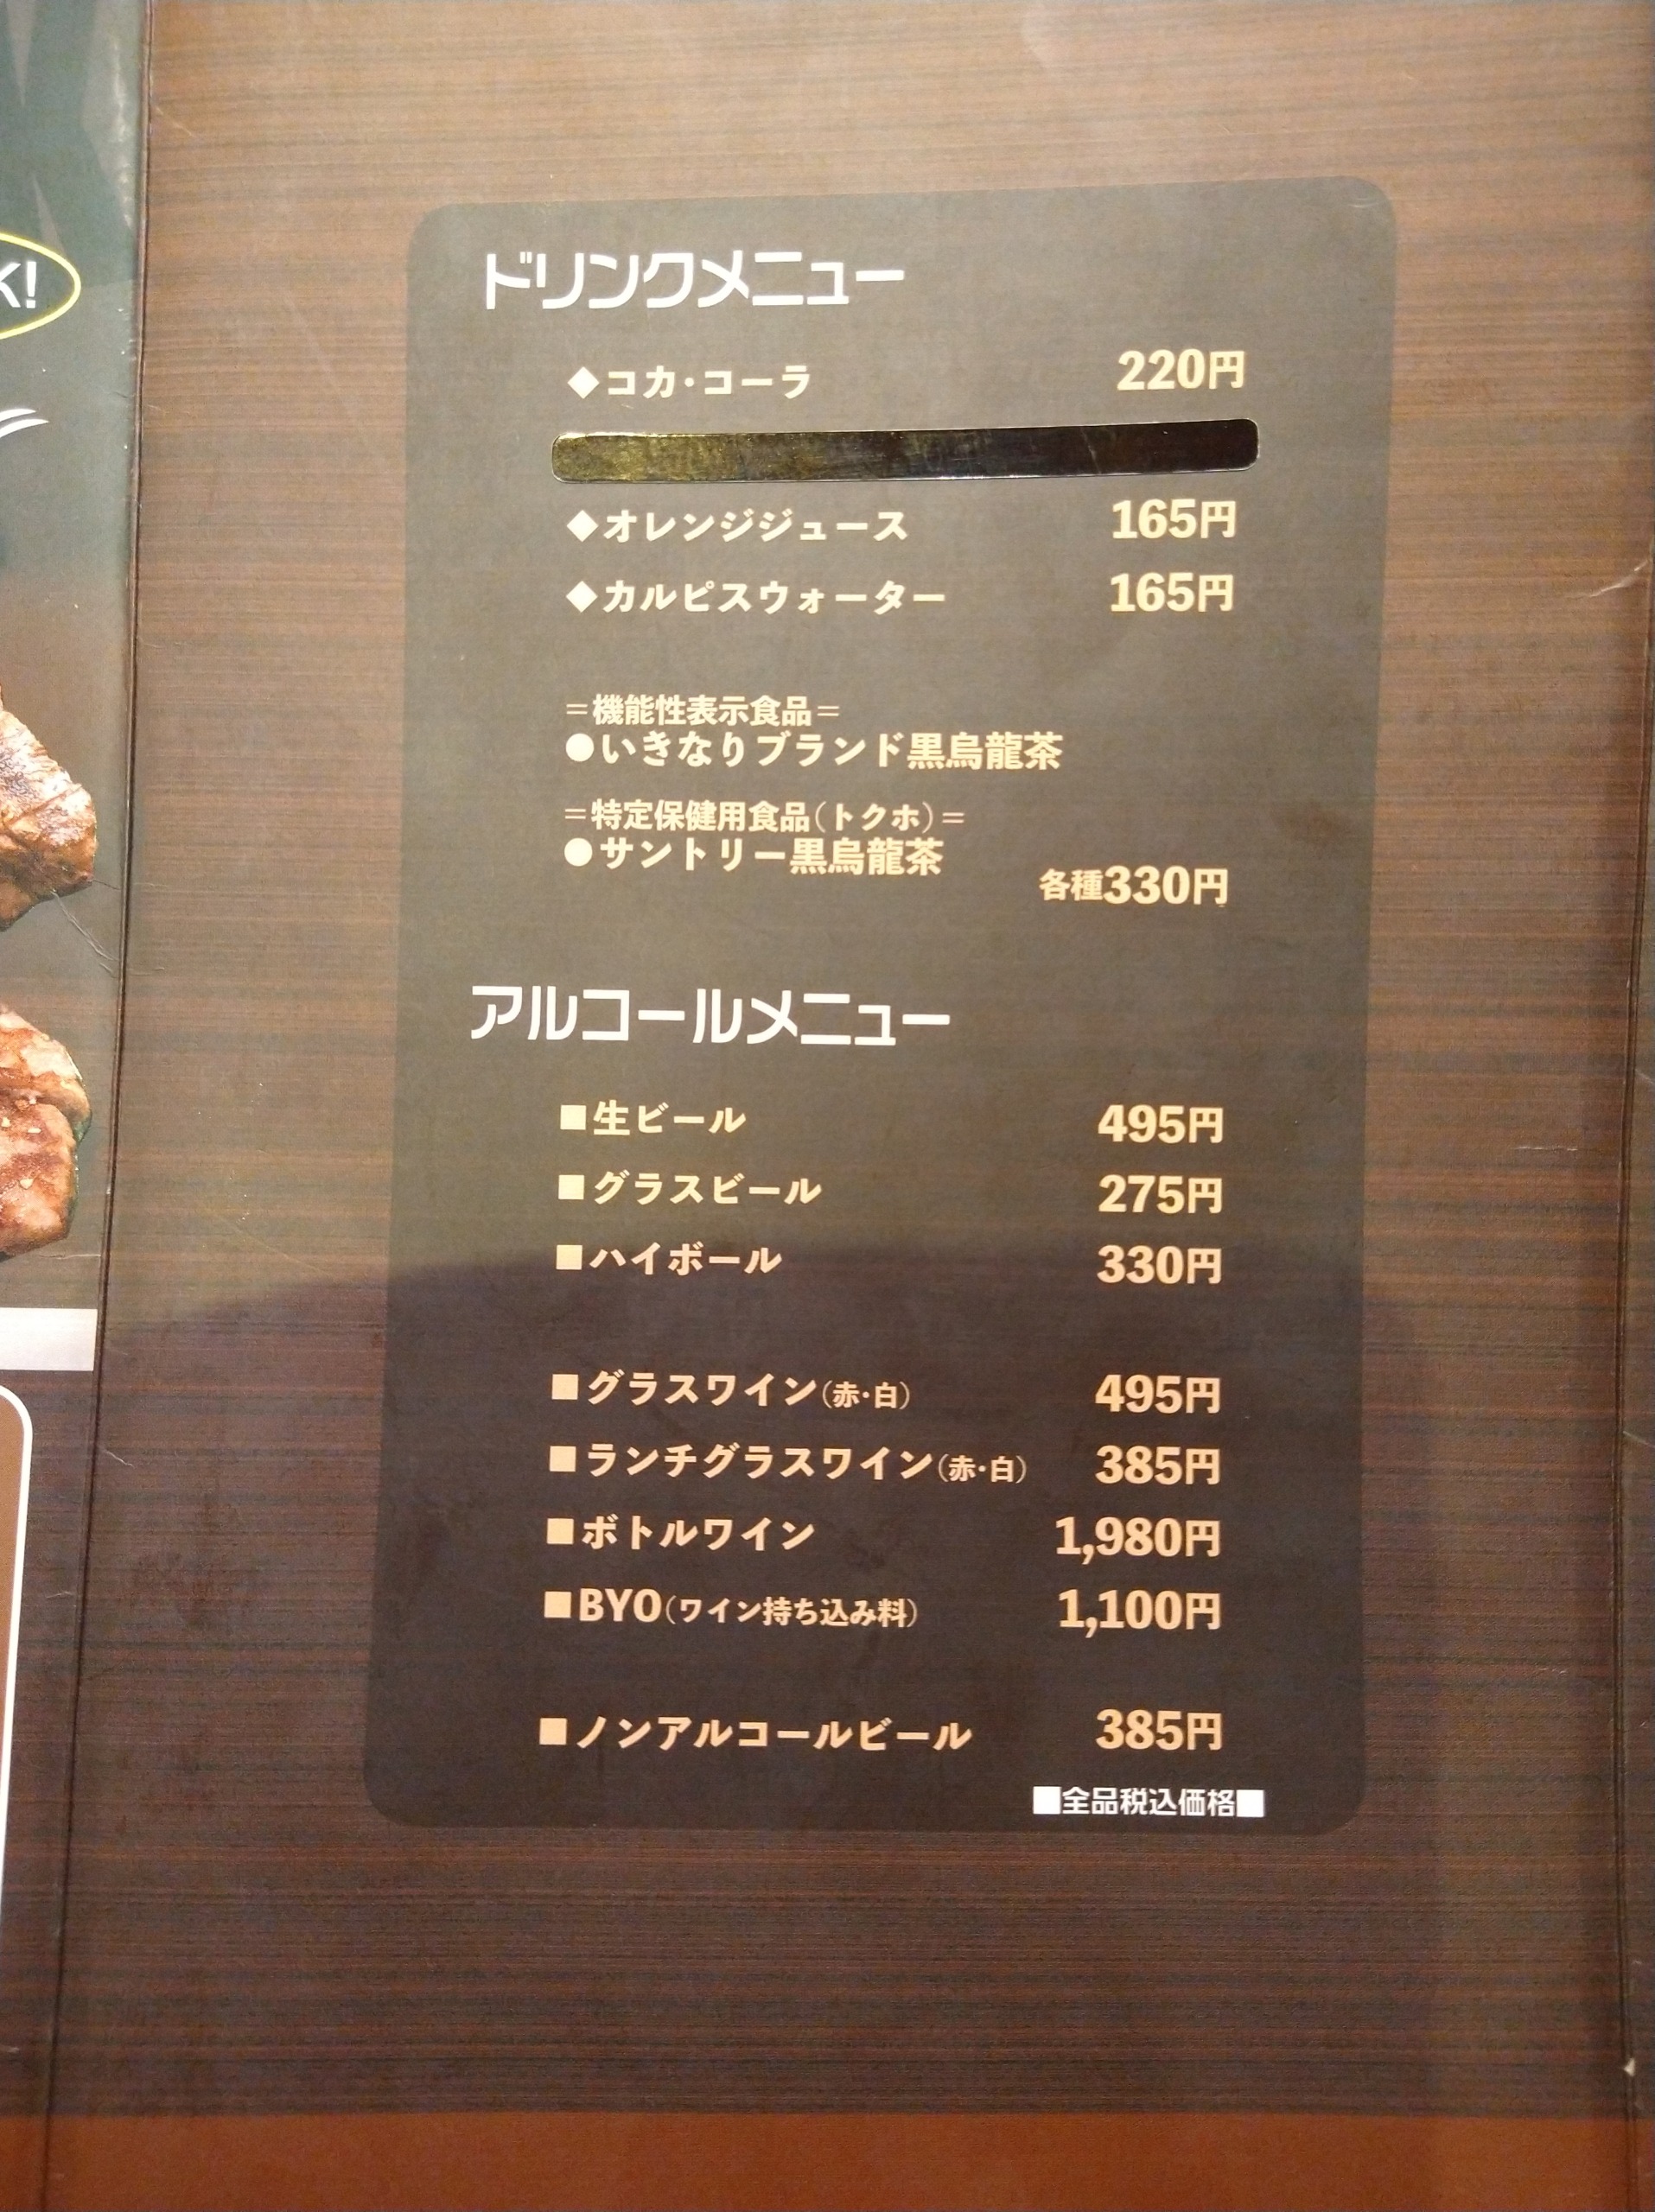 ikinari-stake-chofu-menu04